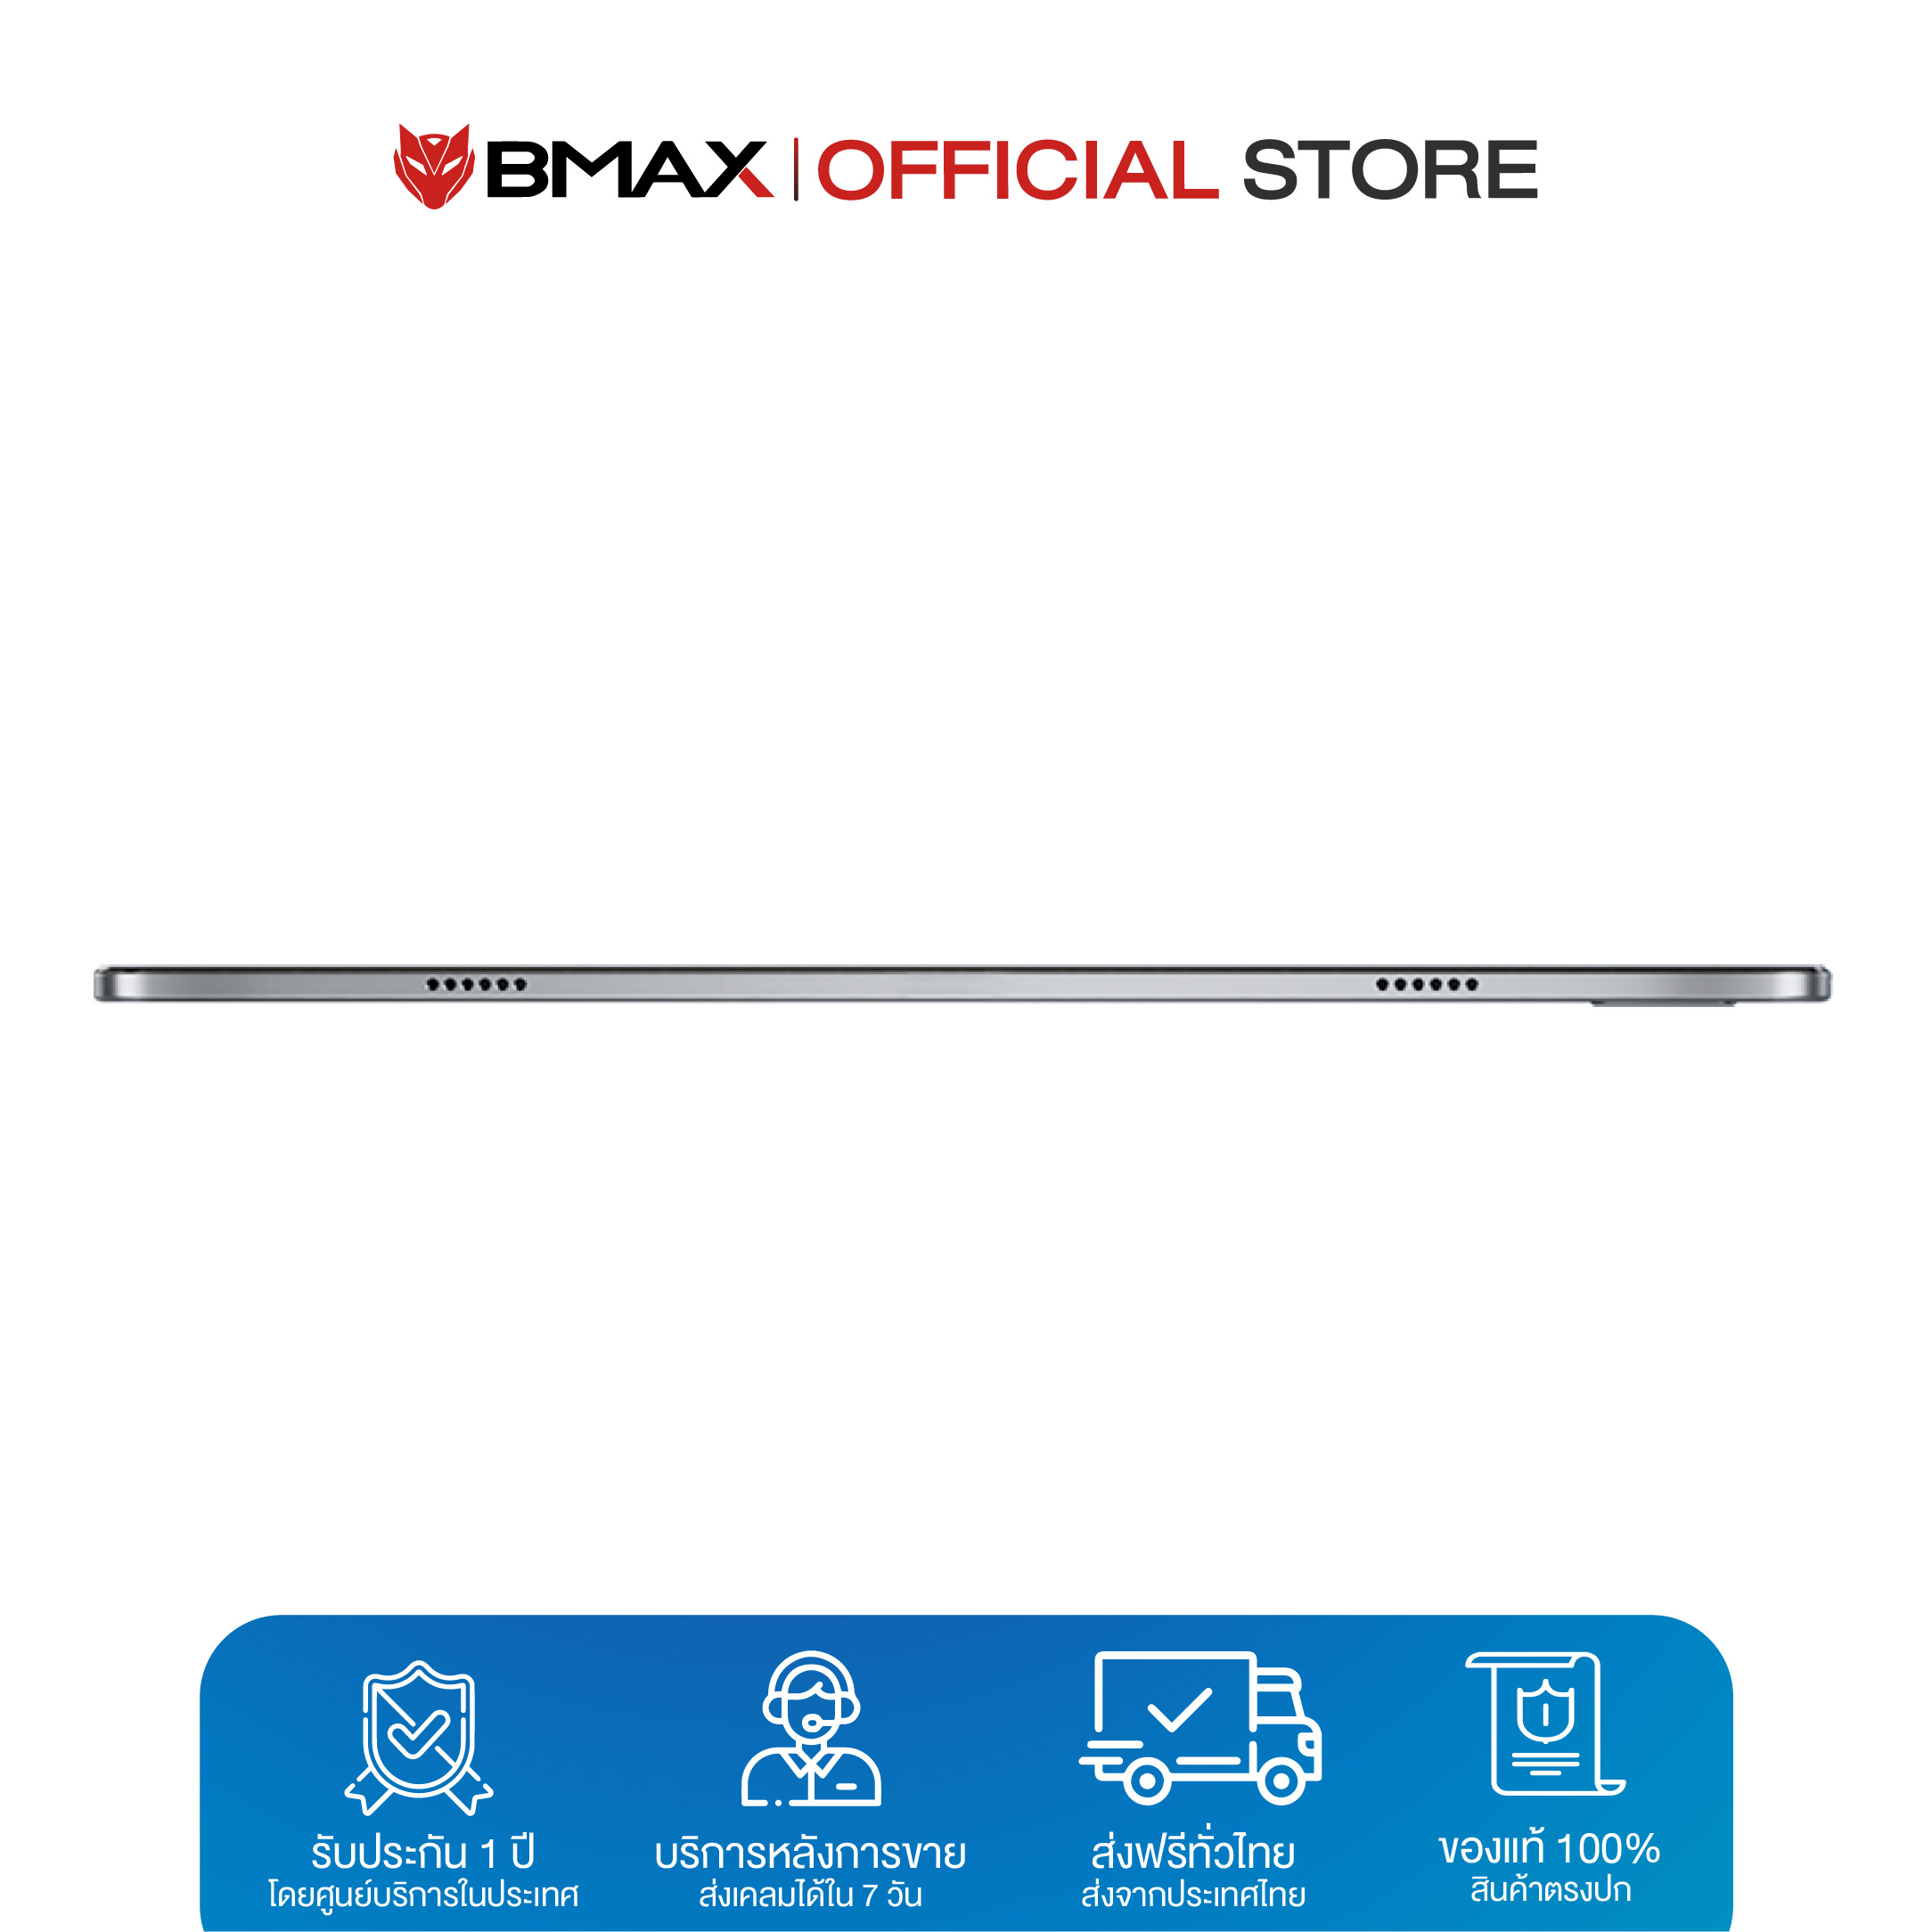 (สินค้าขายดี) BMAX I11 แท็บเล็ต 10.4 นิ้ว CPU T618 Octa Core 8GB/128GB Android11 ประกันไทย 1 ปี